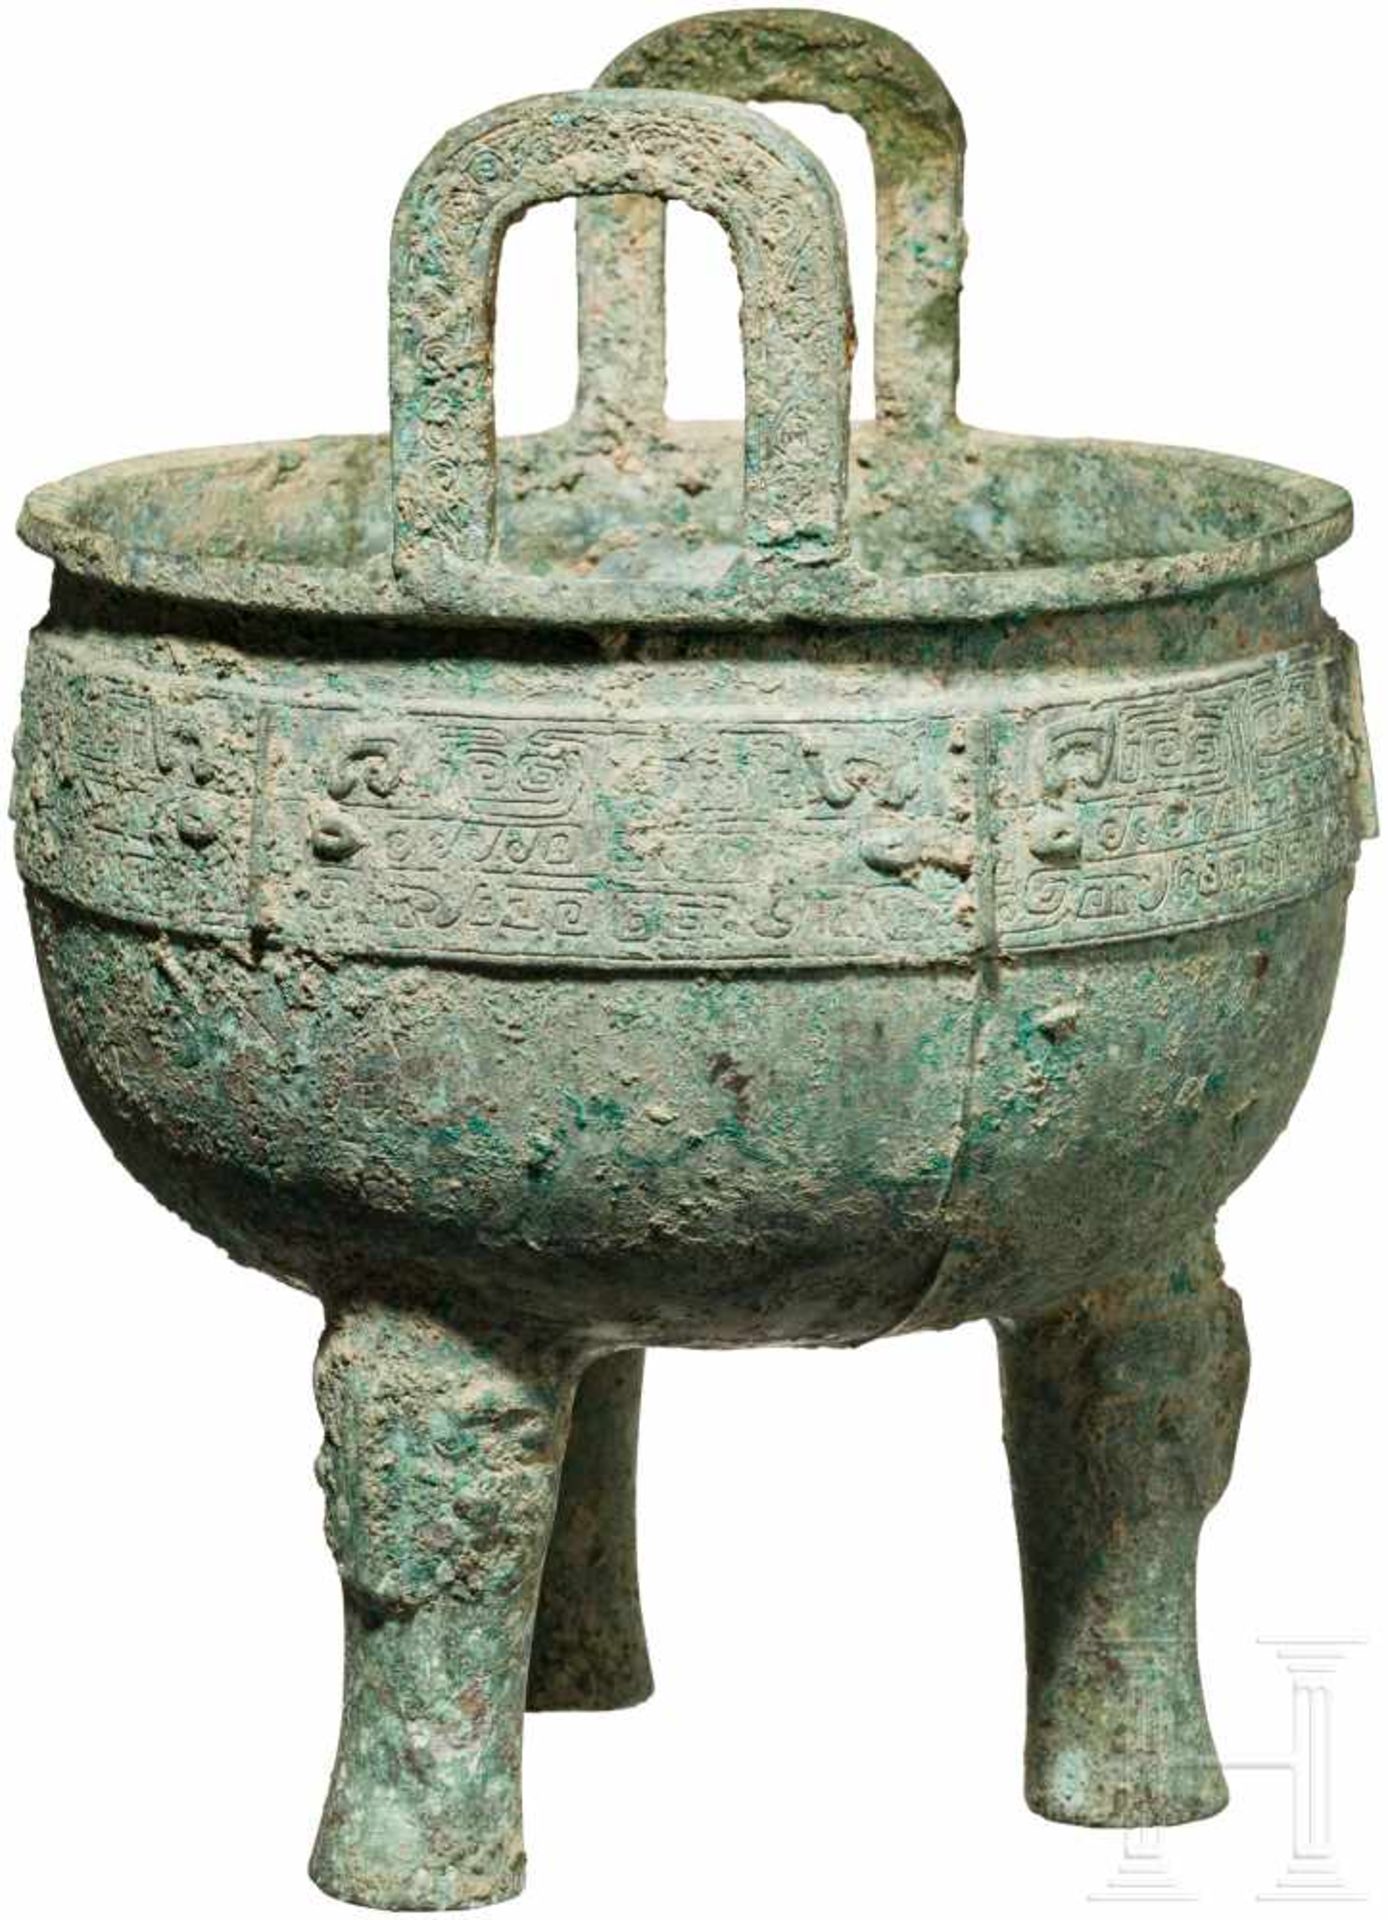 Ein archaischer Dreibeinkessel (Ding), China, westliche Zhou-Dynastie, 10./9. Jhdt. v. Chr.Bronze - Bild 3 aus 4